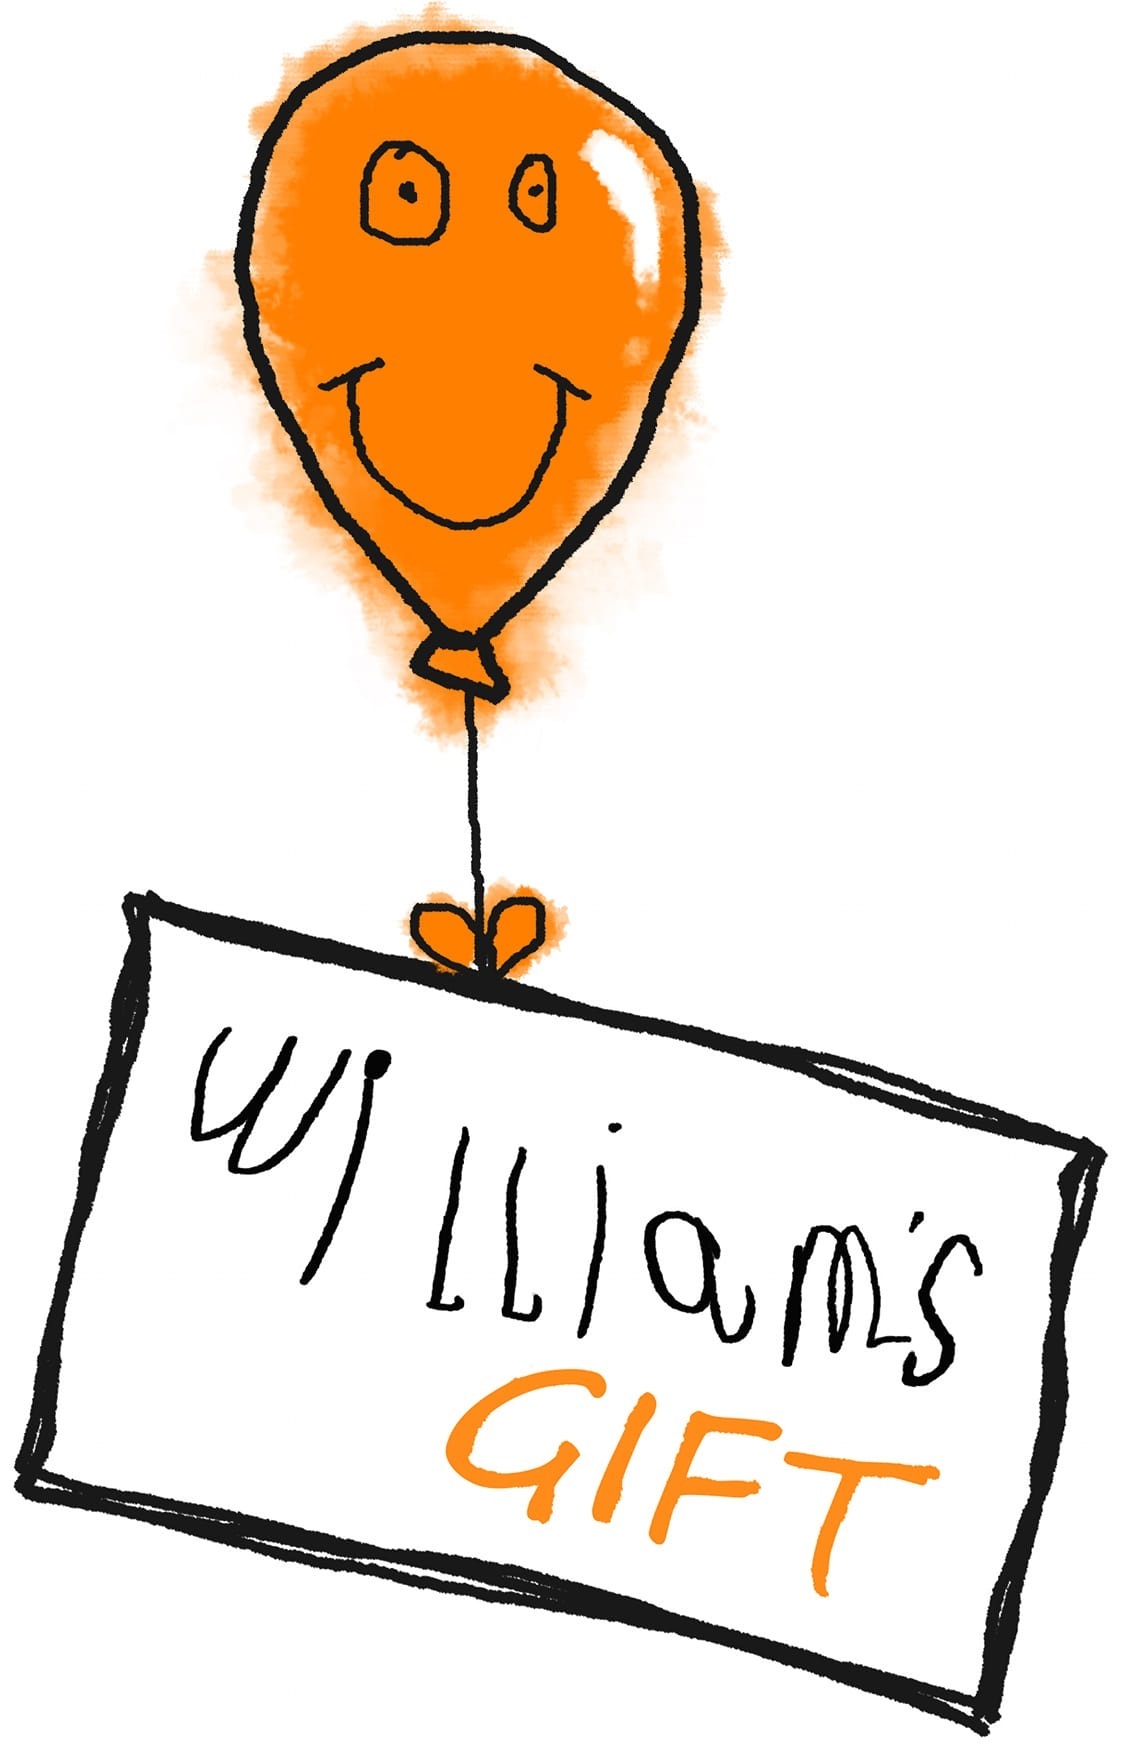 William's Gift